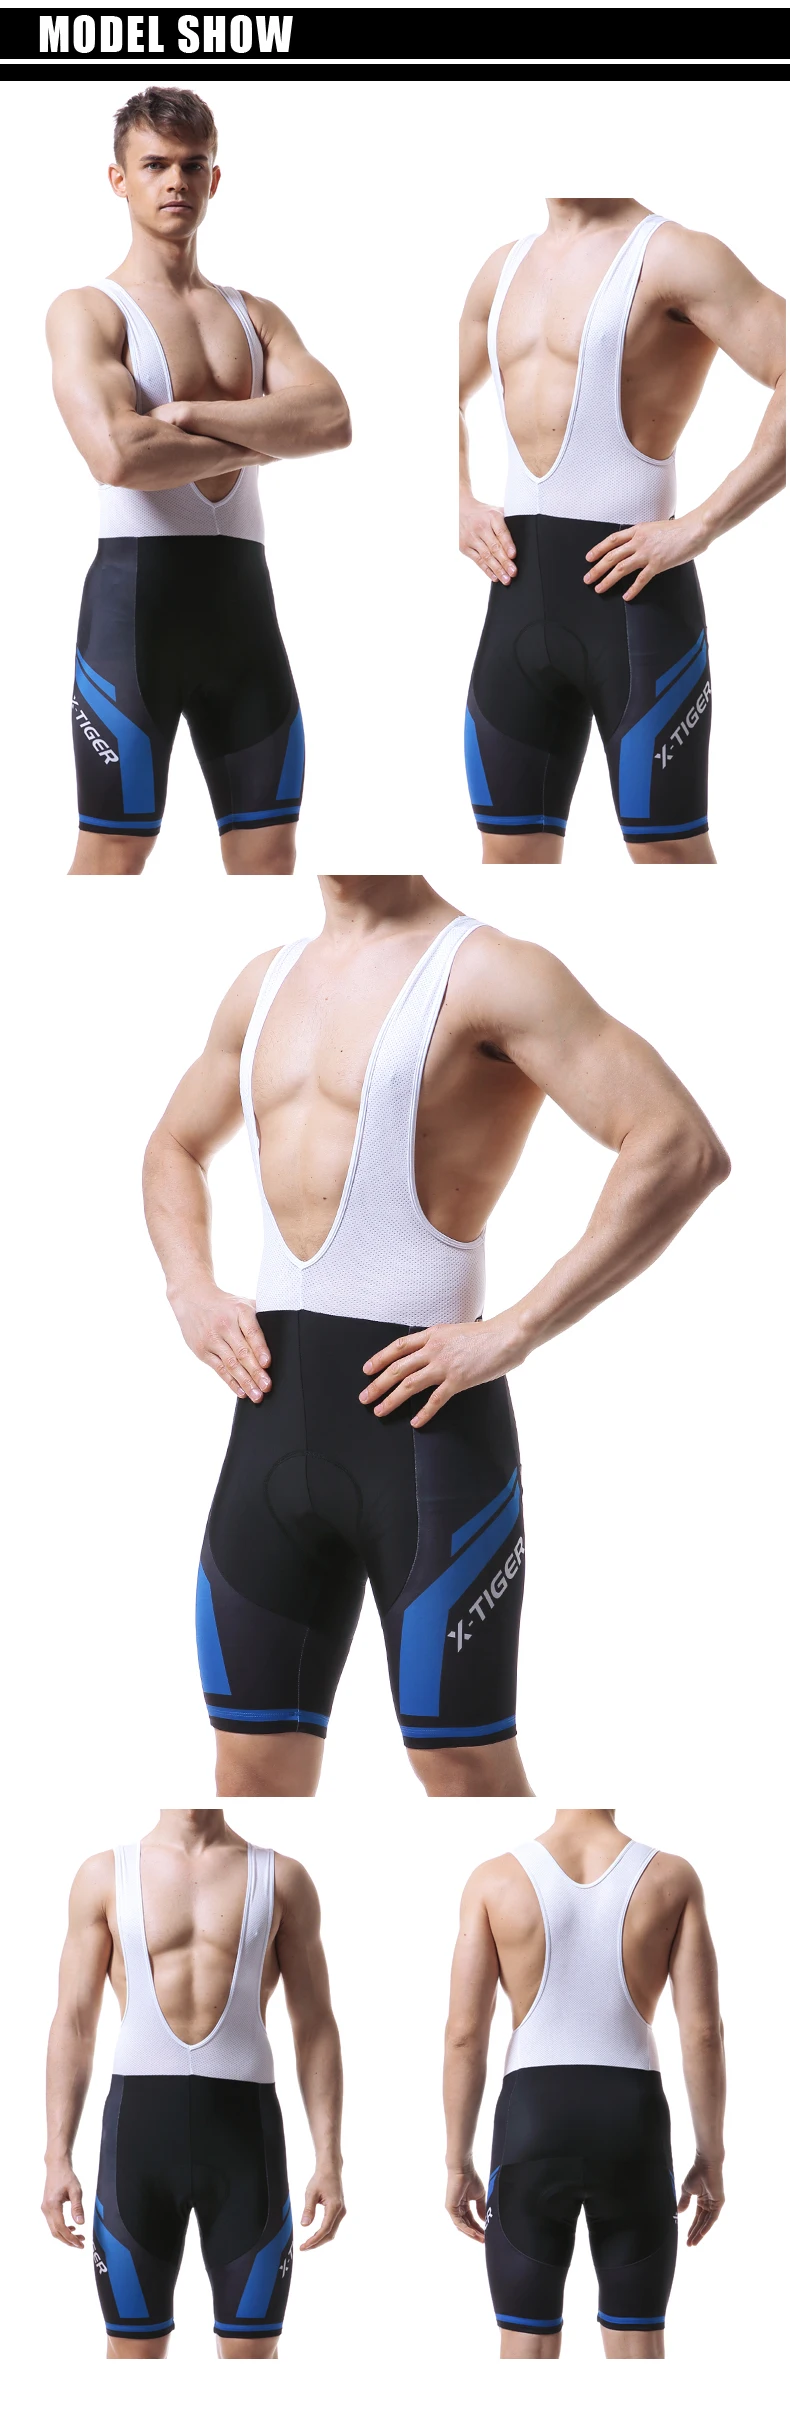 X-Tiger Pro 5D гелевые шорты для велоезды с вставками Coolmax велотрусы велосипедные шорты Verano Culotes Ciclismo для мужчин